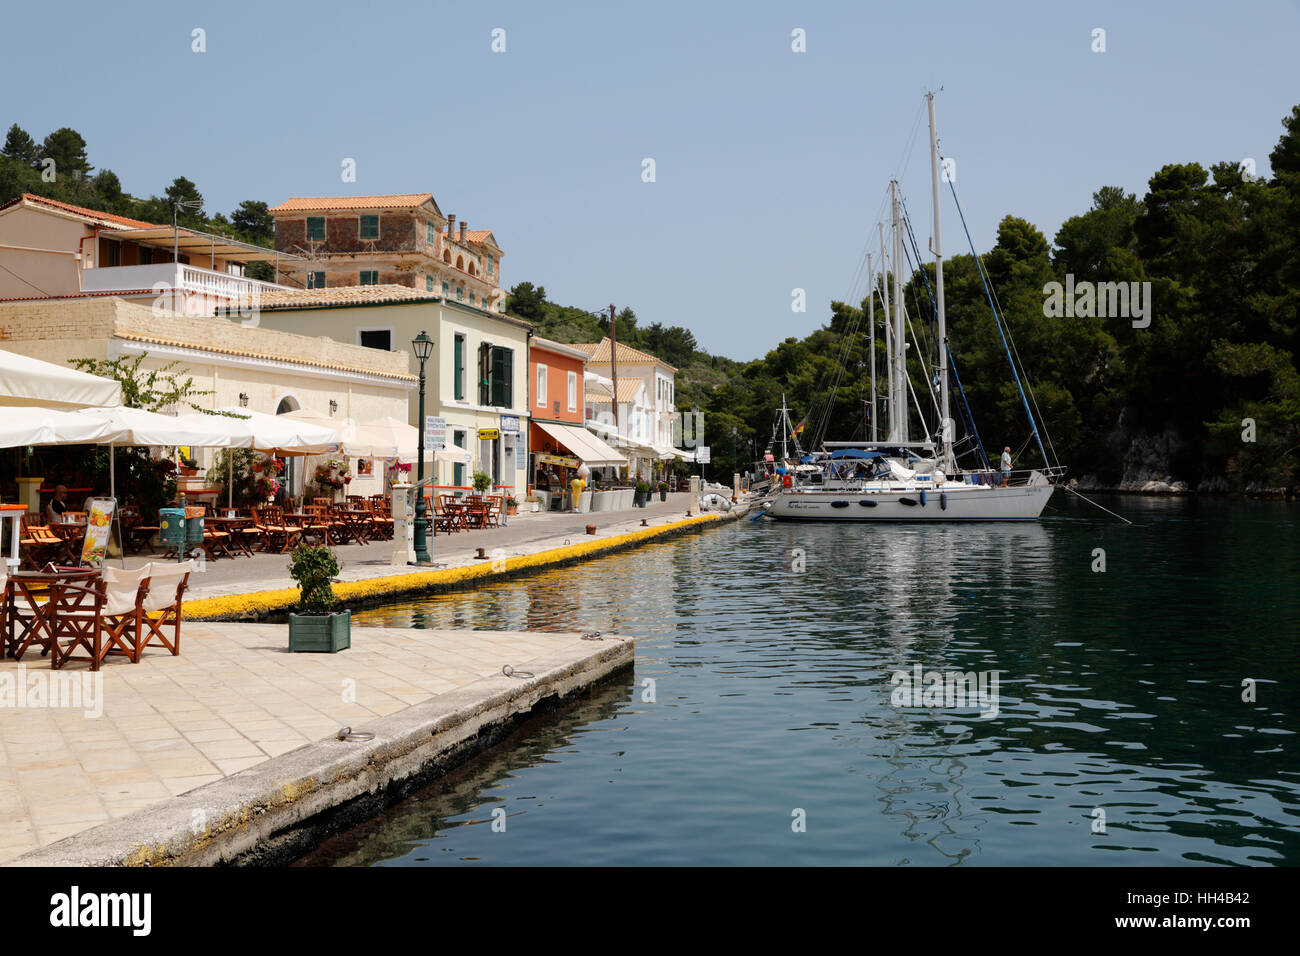 Hafen von Gaios Stadt, Paxos, Ionische Inseln, griechische Inseln, Griechenland, Europa Stockfoto